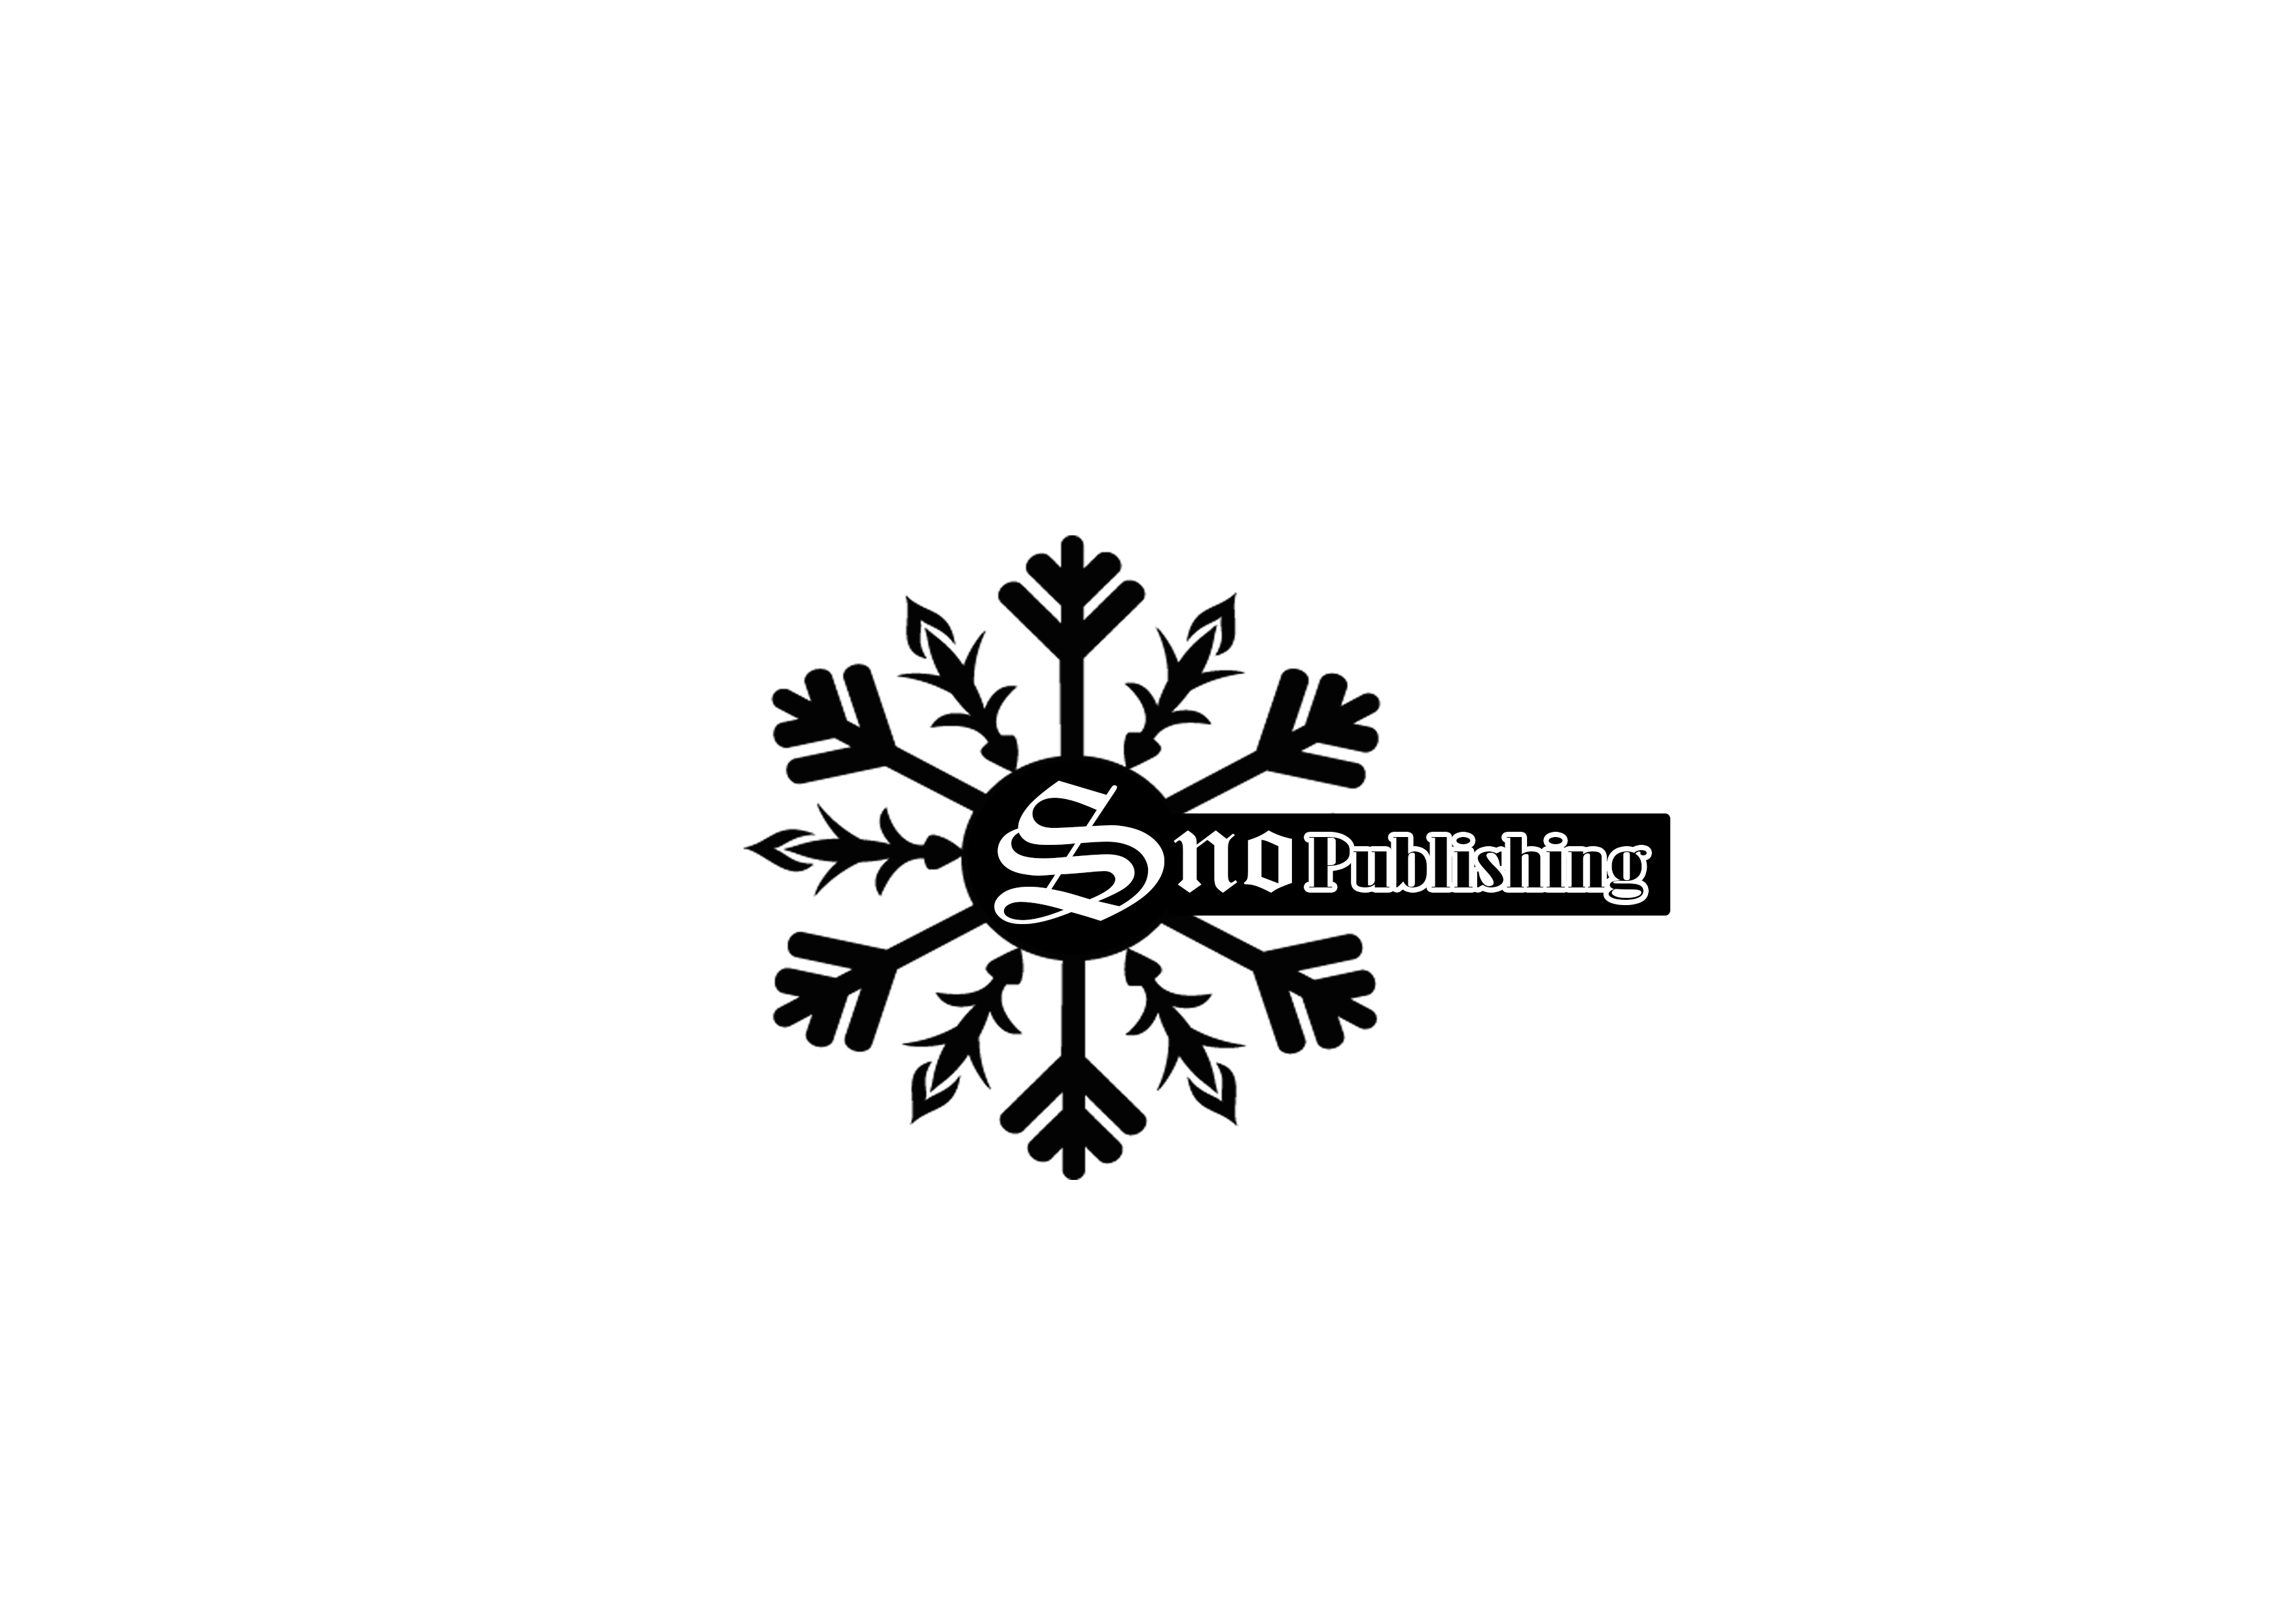 SnoPublishing LLC